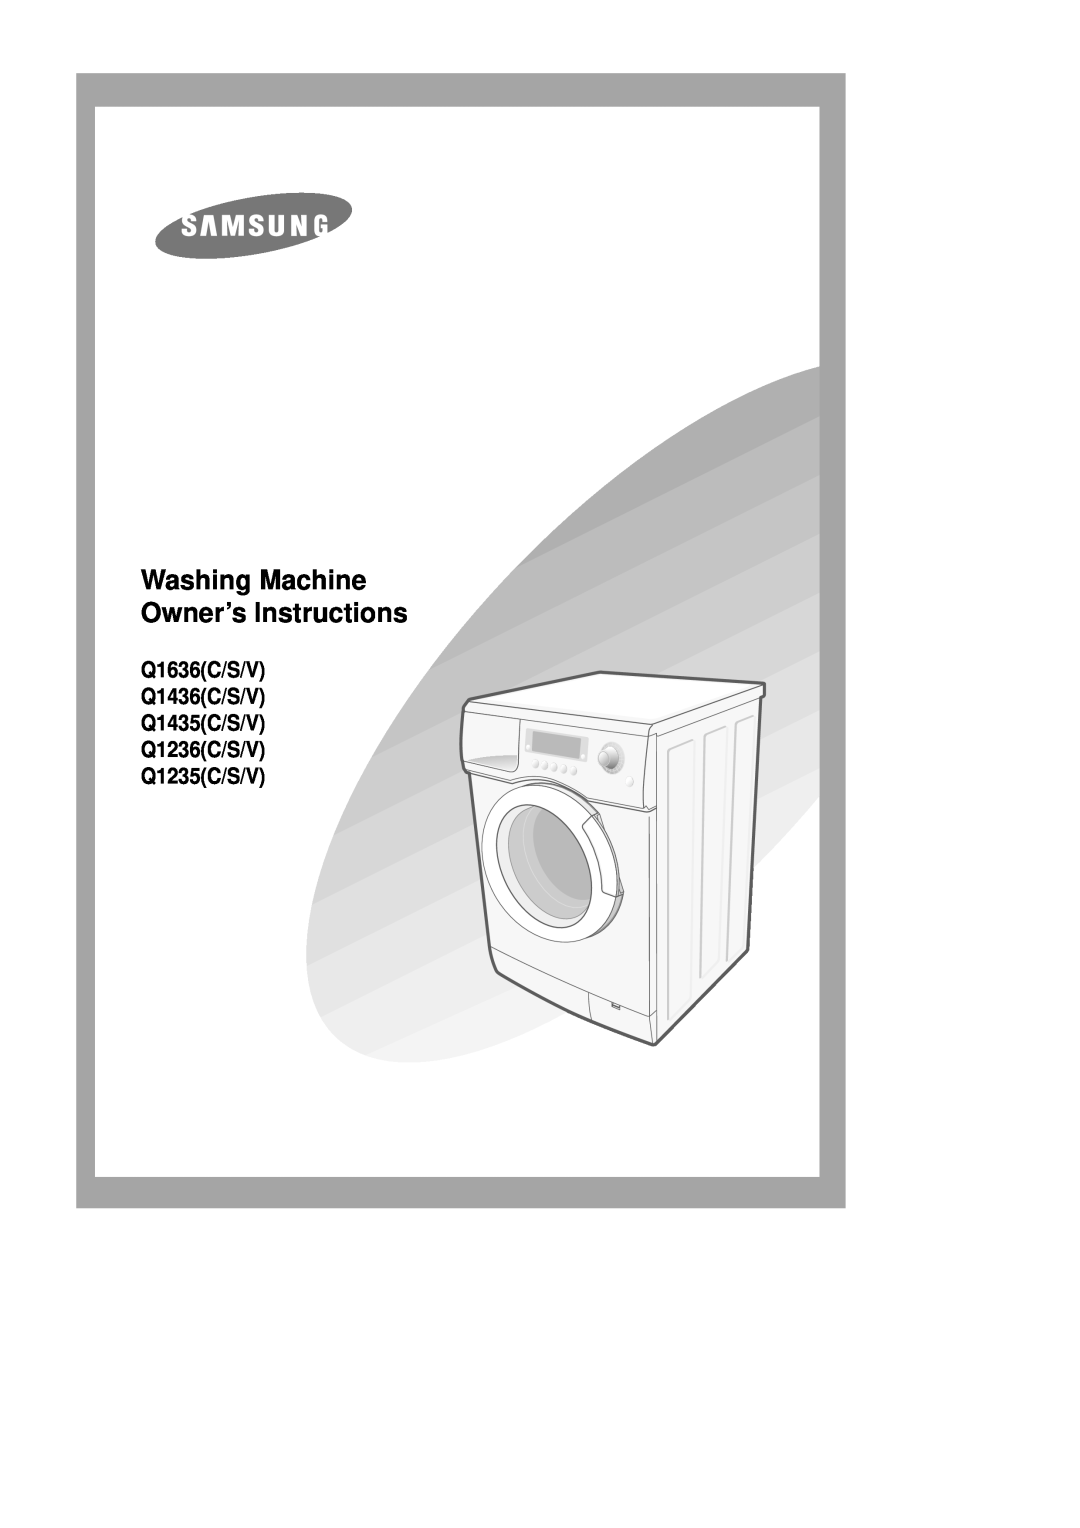 Samsung Q1435VGW1/XEF manual Lave-linge Mode d’emploi, Q1636C/S/V Q1635C/S/V Q1436C/S/V Q1435C/S/V Q1236C/S/V Q1235C/S/V 